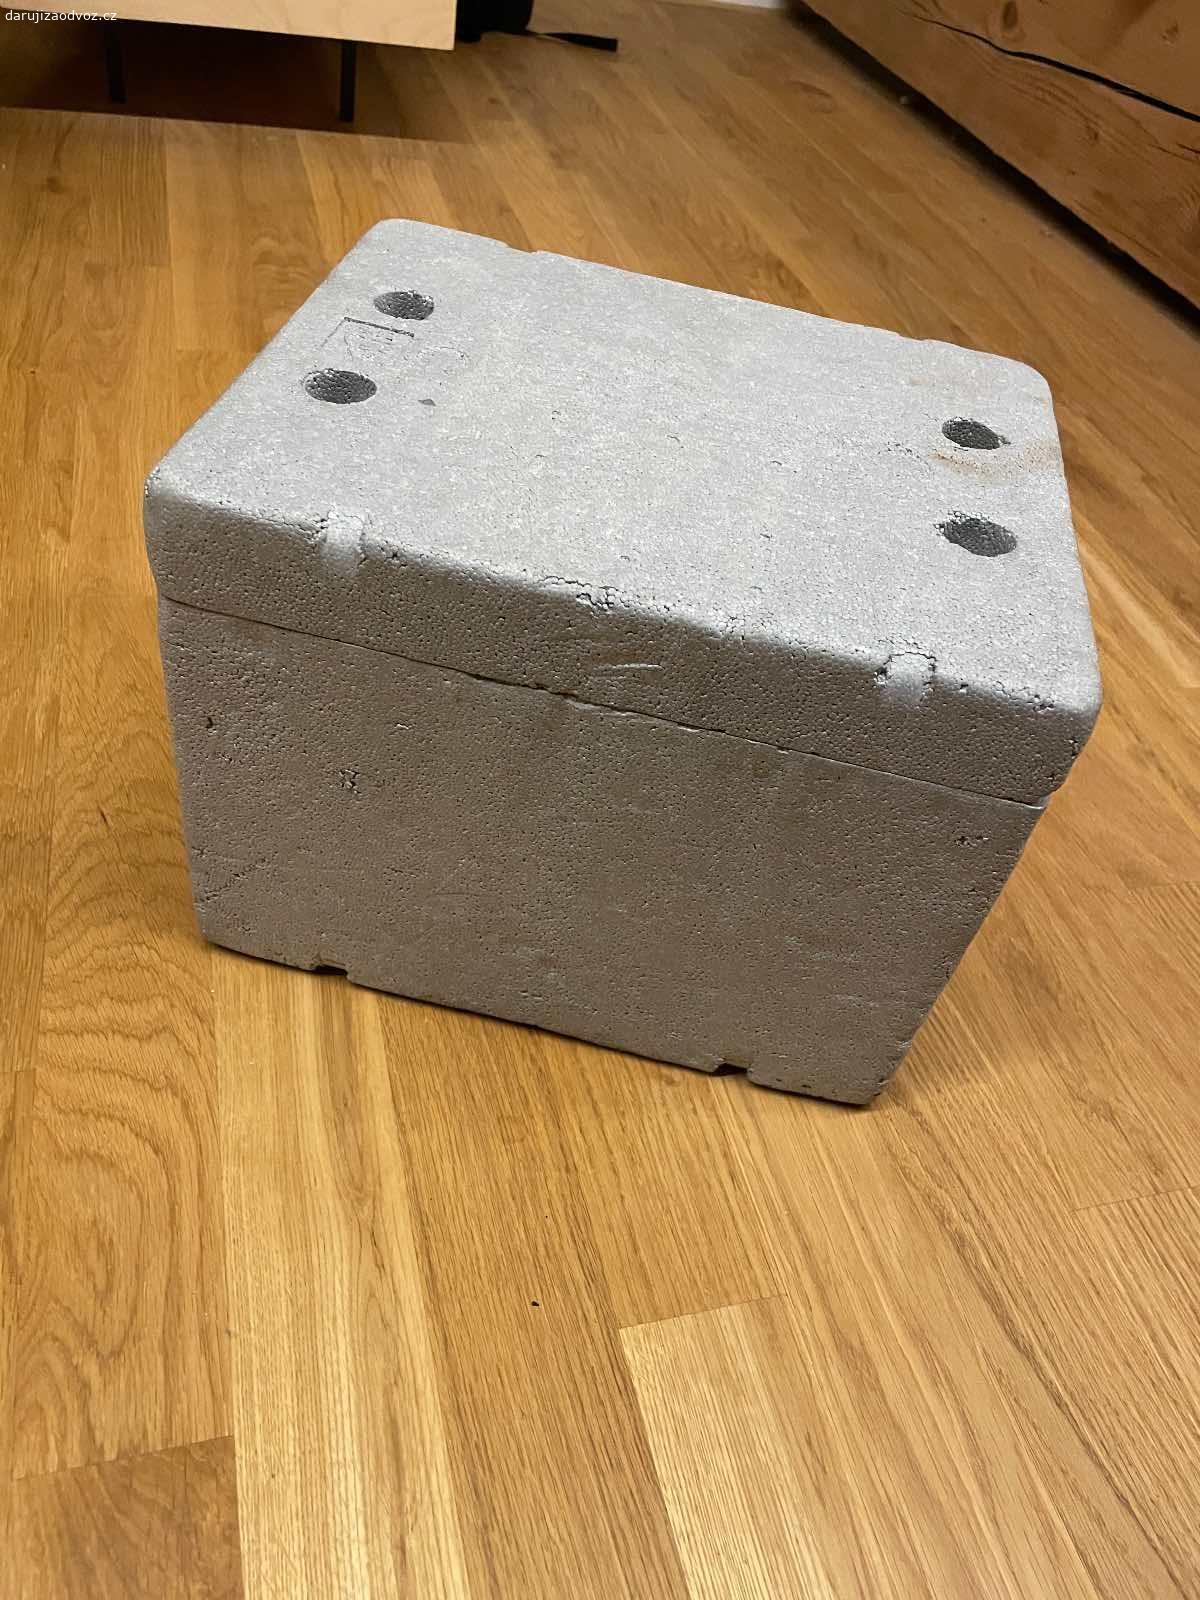 Polystyrenový termobox. Daruji polystyrenový termobox bez chladících náplní. Vnitřní rozměry cca 23x17x15 cm. Jsou znát stopy užívání, ale určitě ještě poslouží.